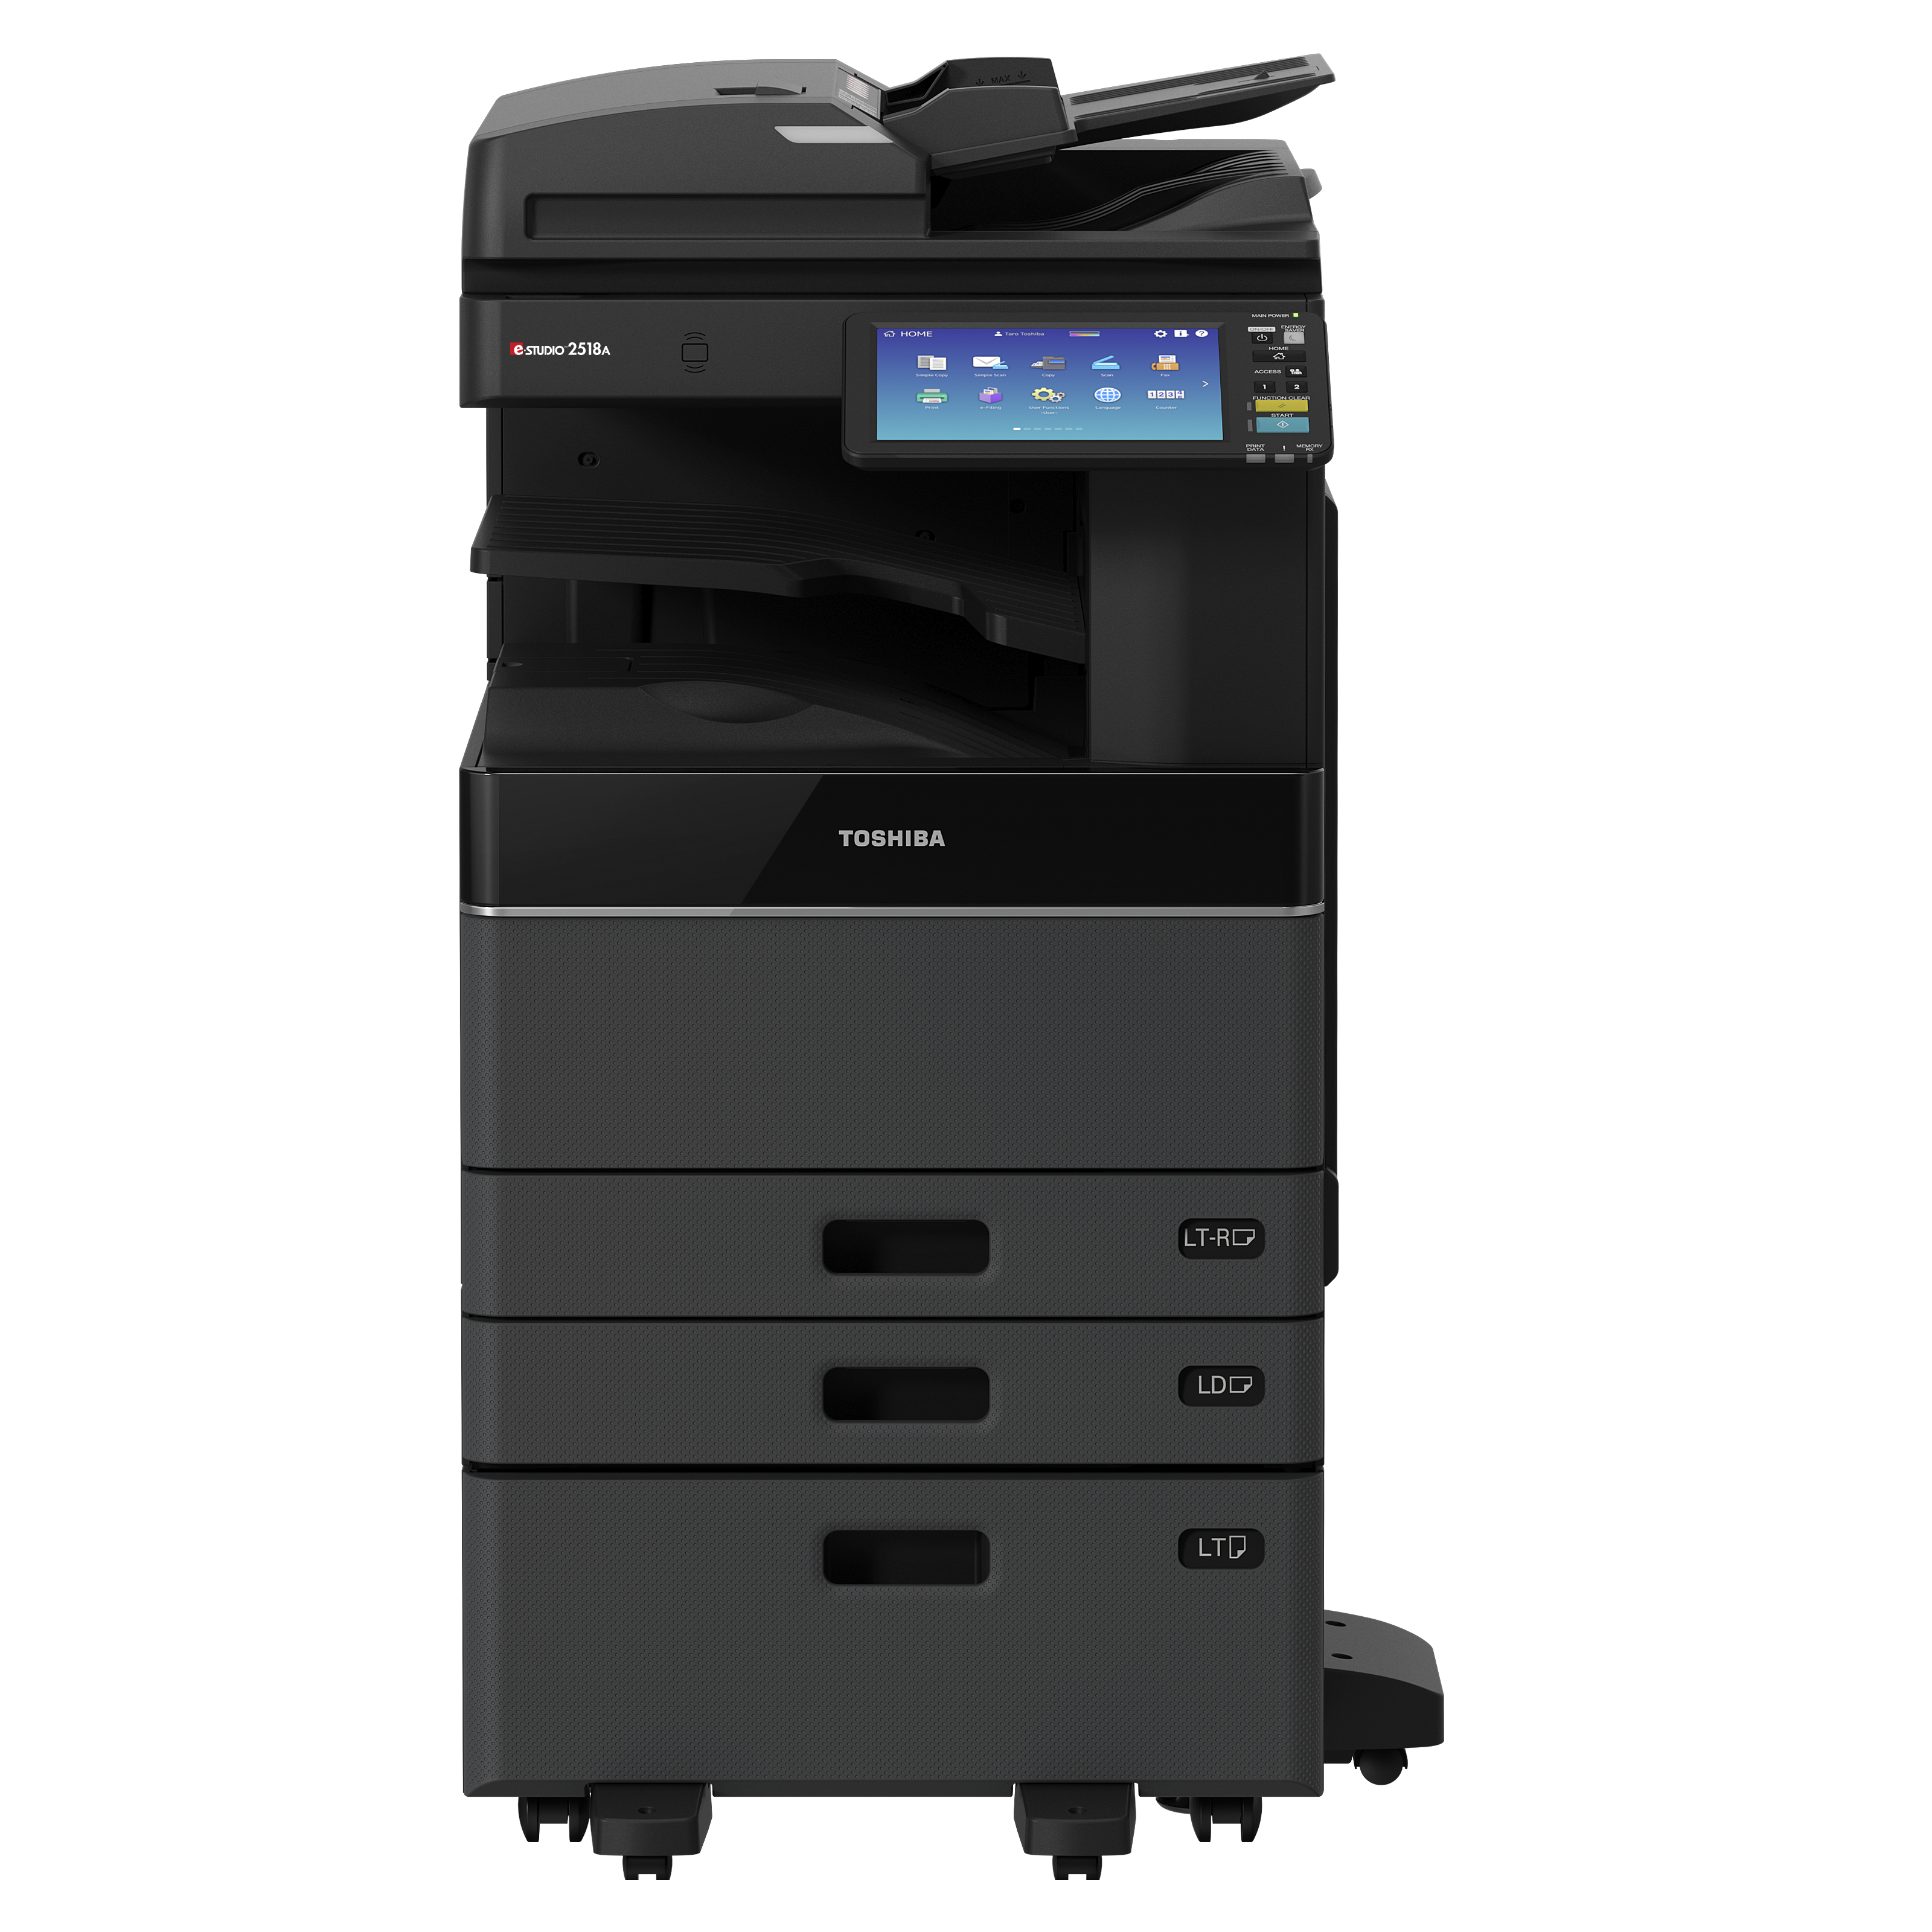 Toshiba E-Studio 5018AG Monochrome Multifunction Printer Copier Scanner with Fast Dual Core Processor